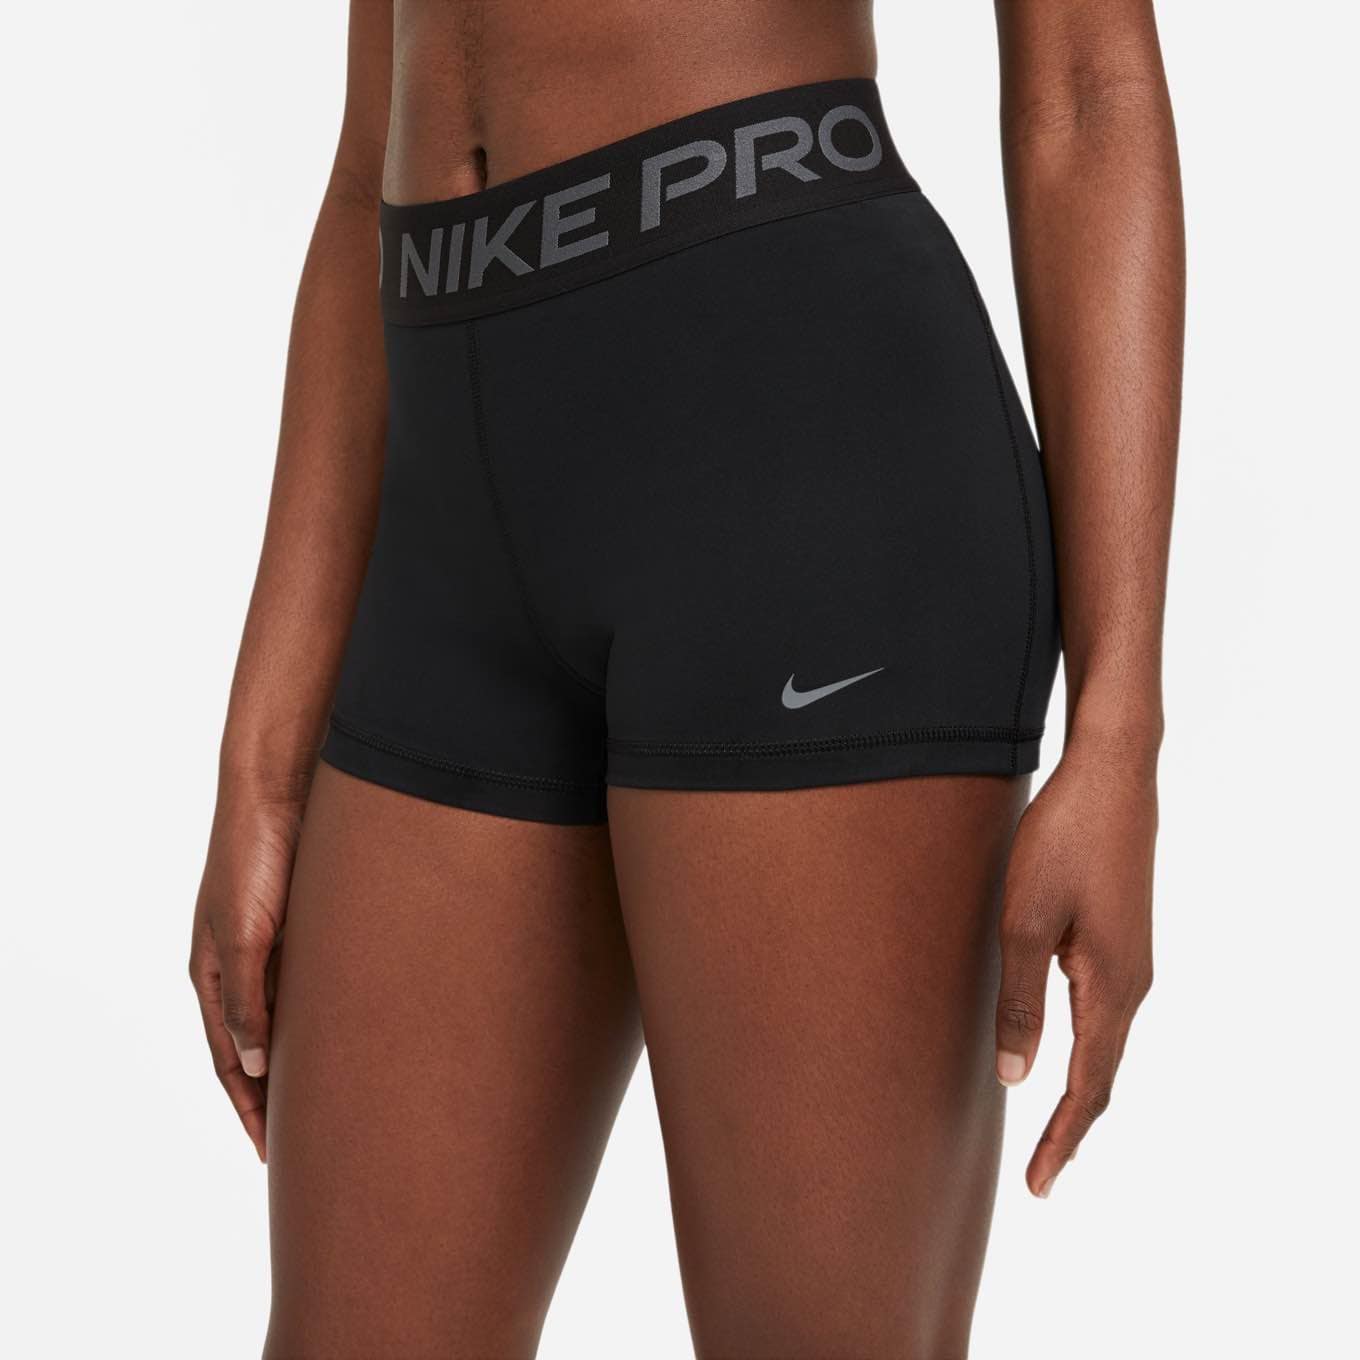 Nike Pro Women&